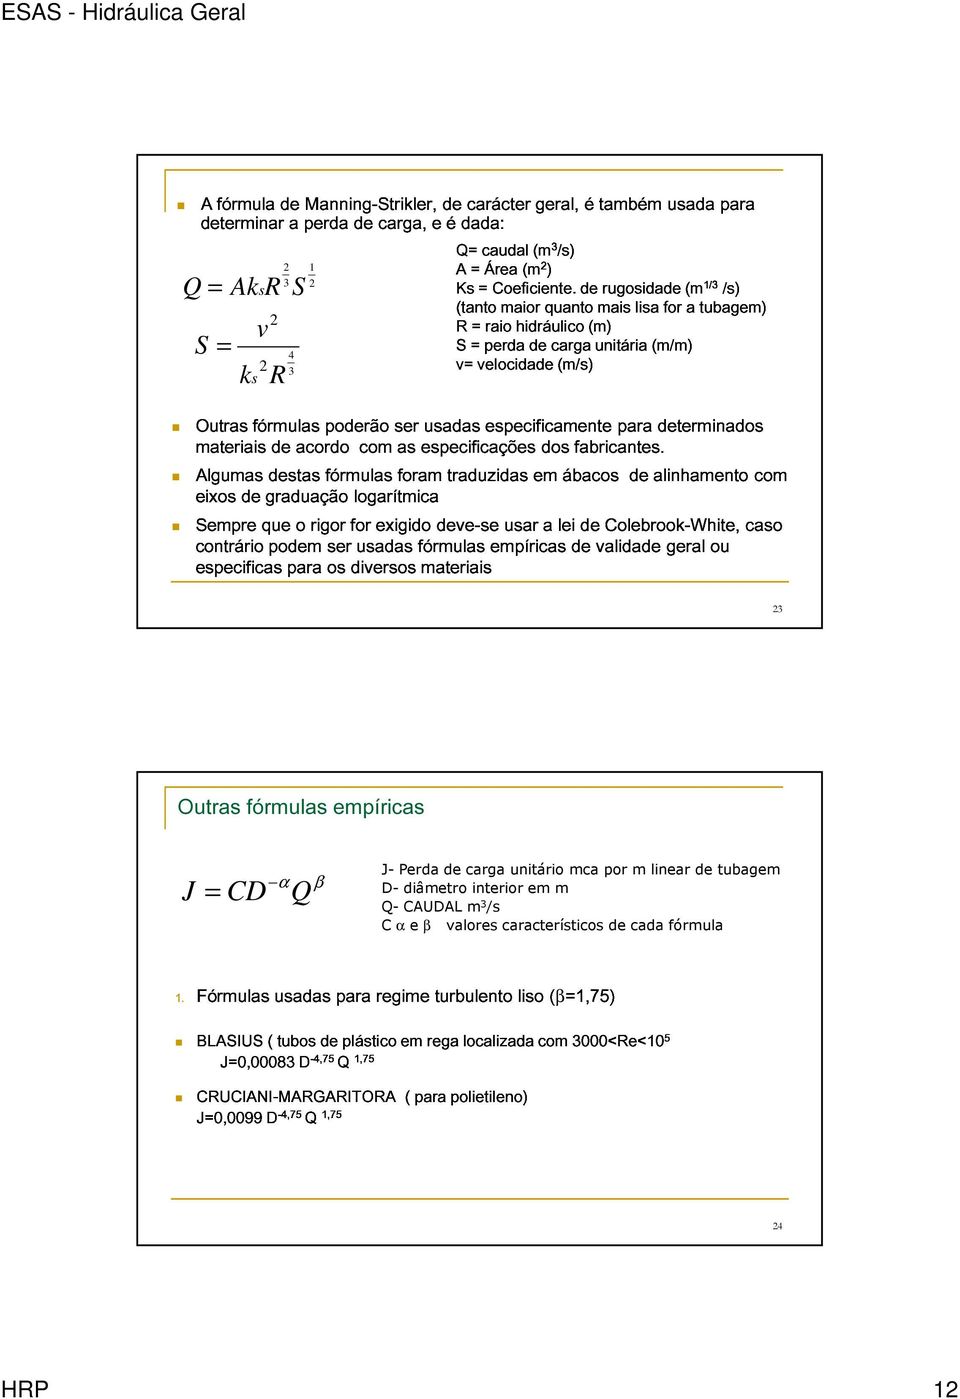 usadas especificamente para determinados v S = 4 Sempre eixos materiais de graduação destas acordo fórmulas logarítmica com as foram especificações traduzidas em dos ábacos fabricantes.